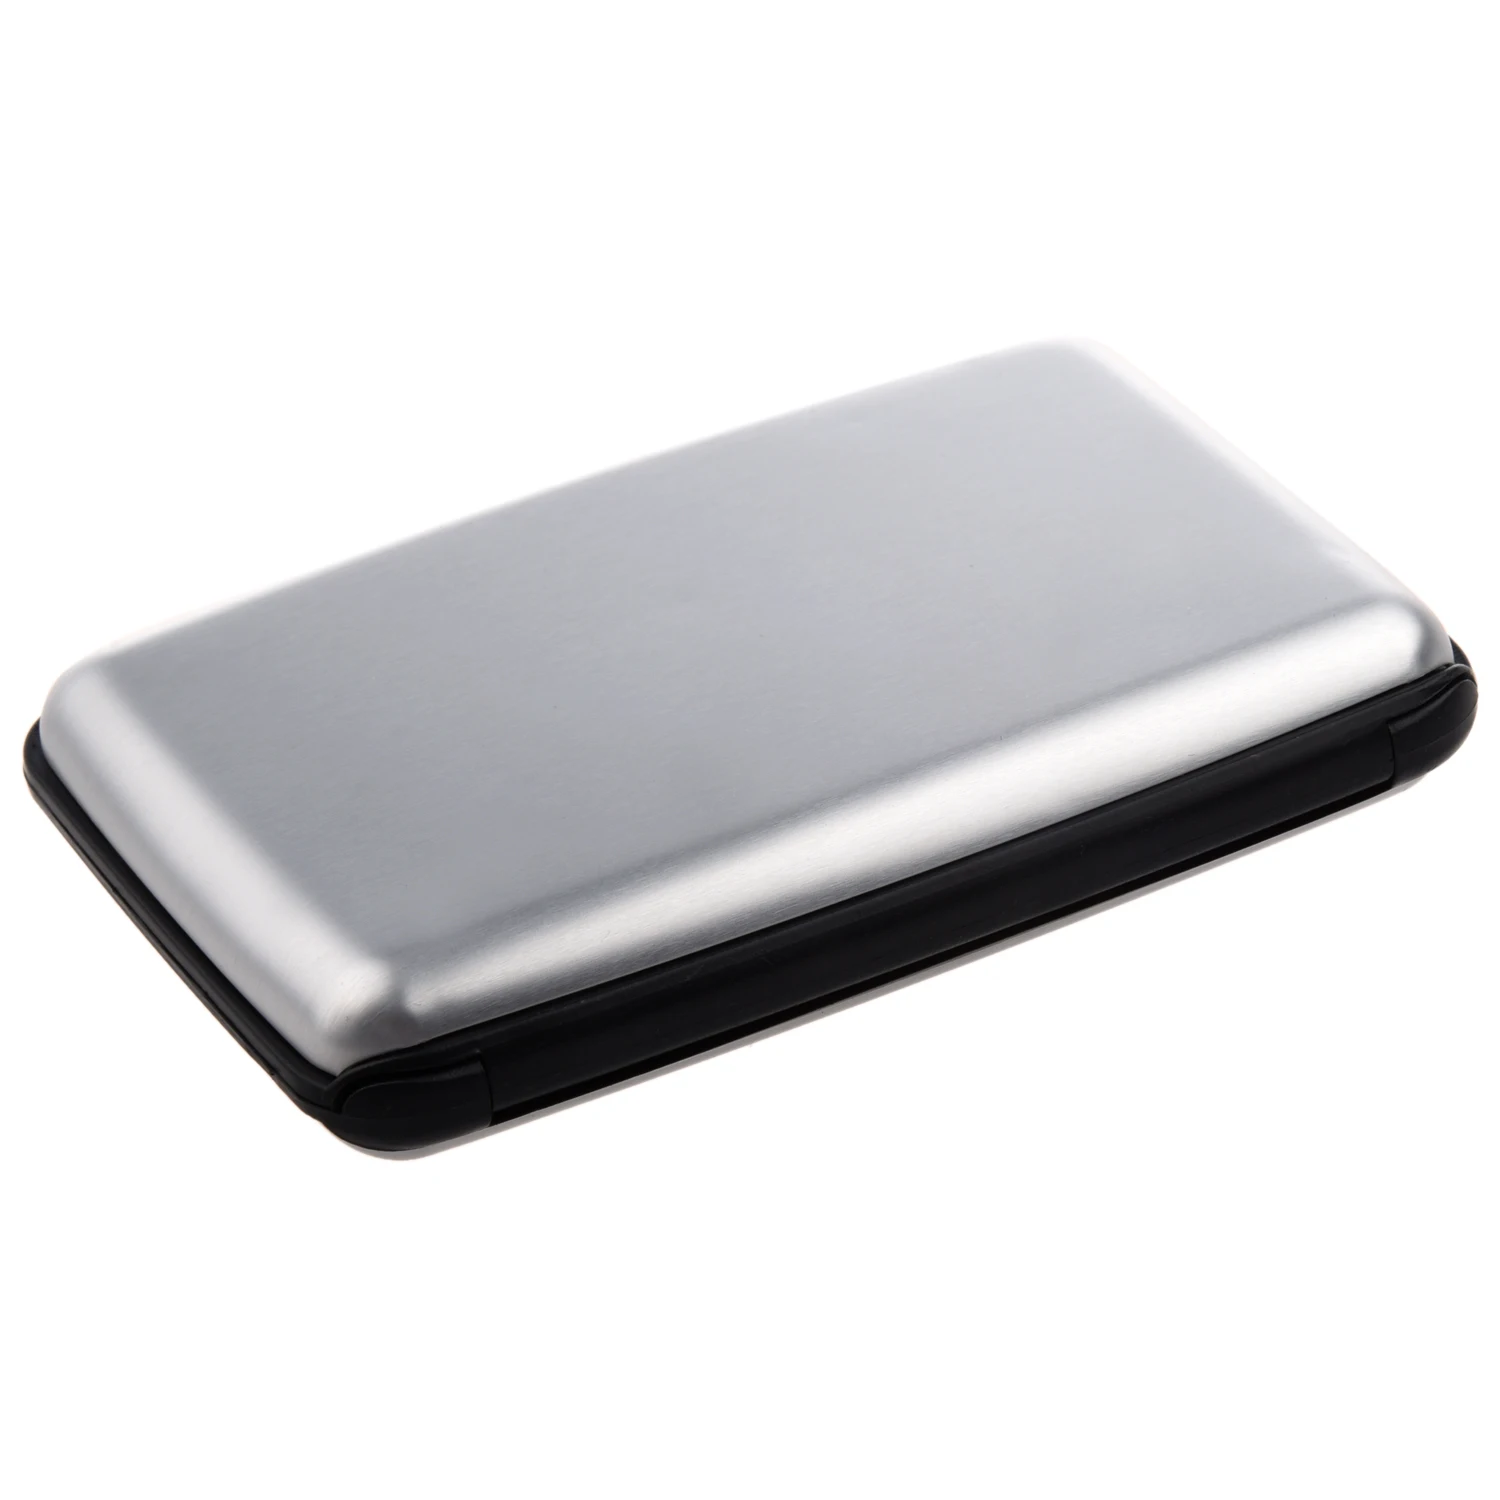 Алюминиевый корпус, держатель для кредитных карт, металлический кошелек, один размер, серебристый